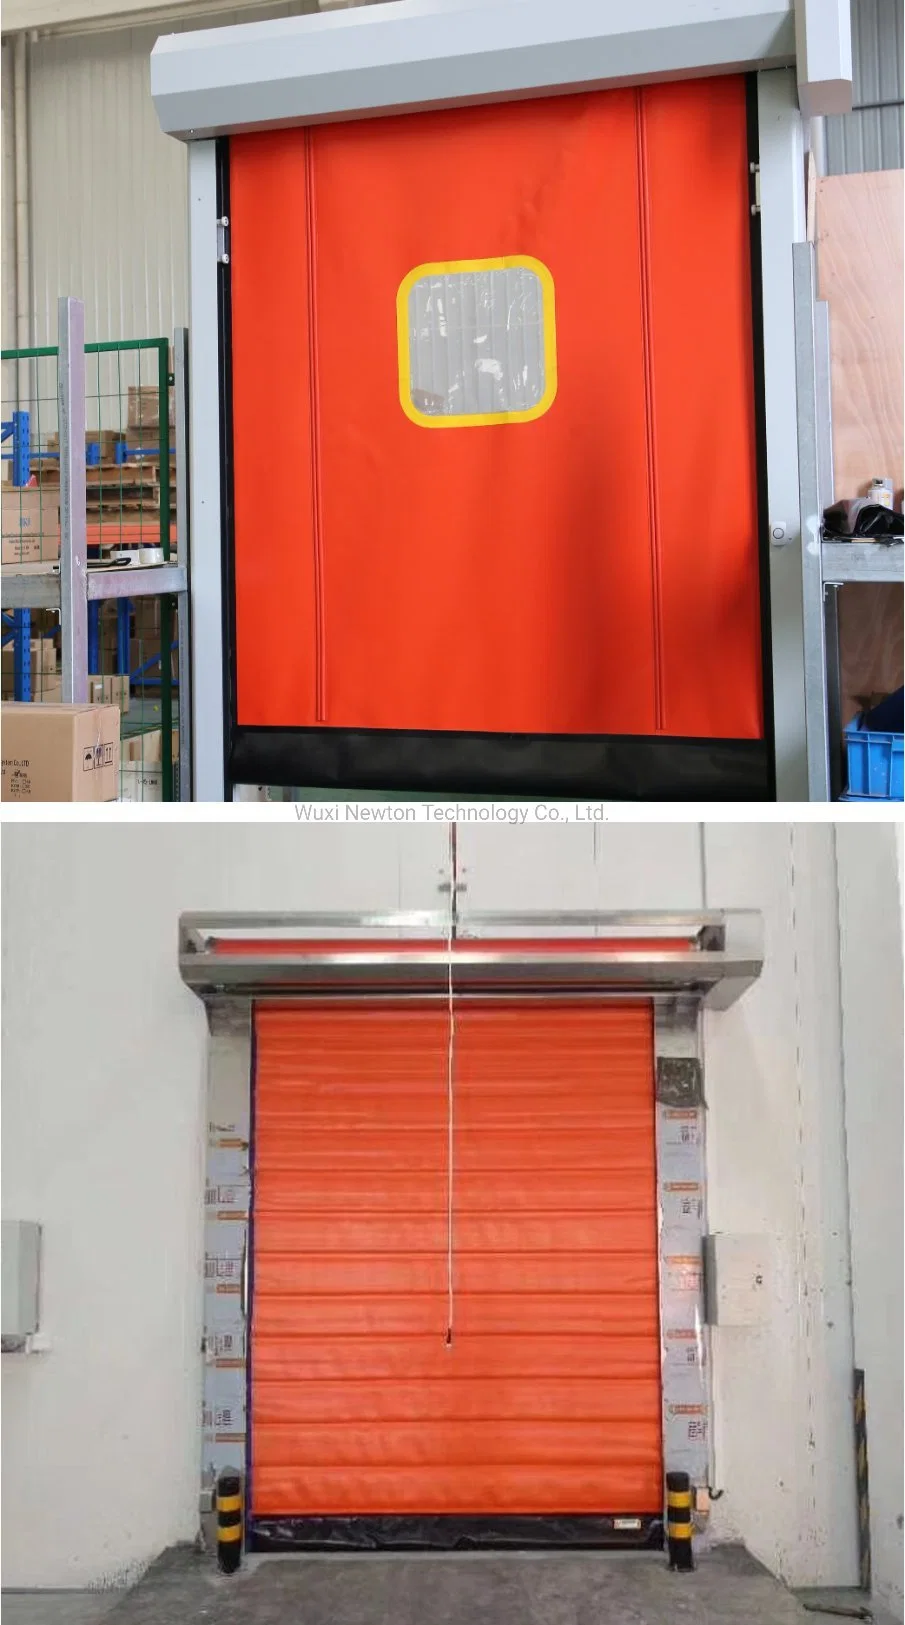 Exterior Waterproof Industrial Aluminum High Speed Spirale Garage Door